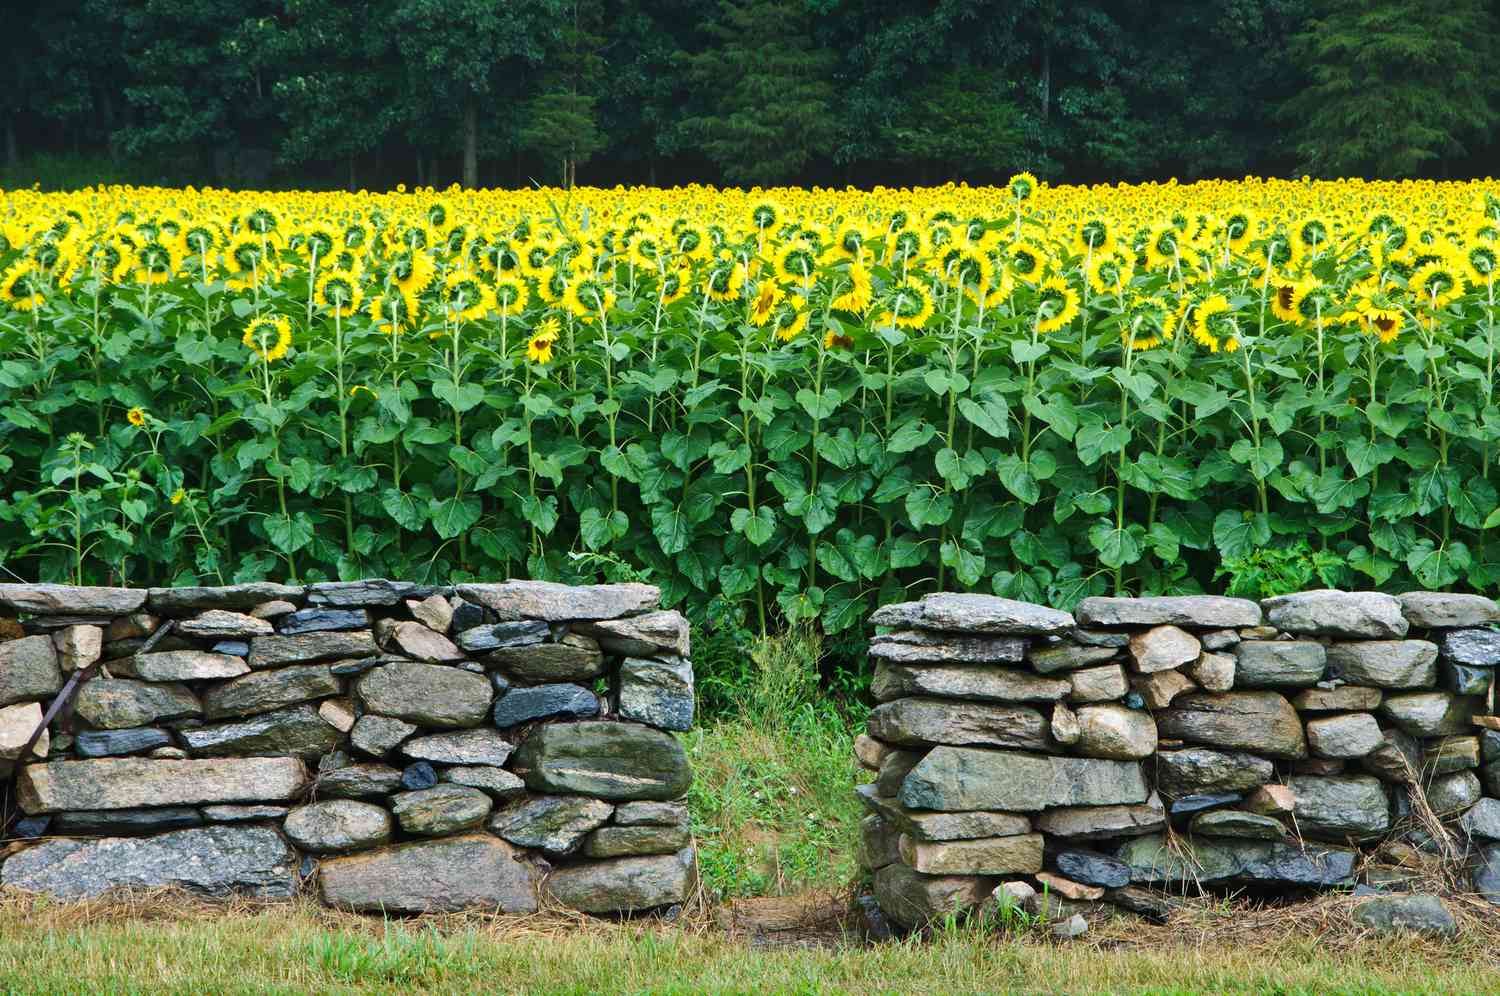 Muro de piedra con un campo de girasoles detrás.